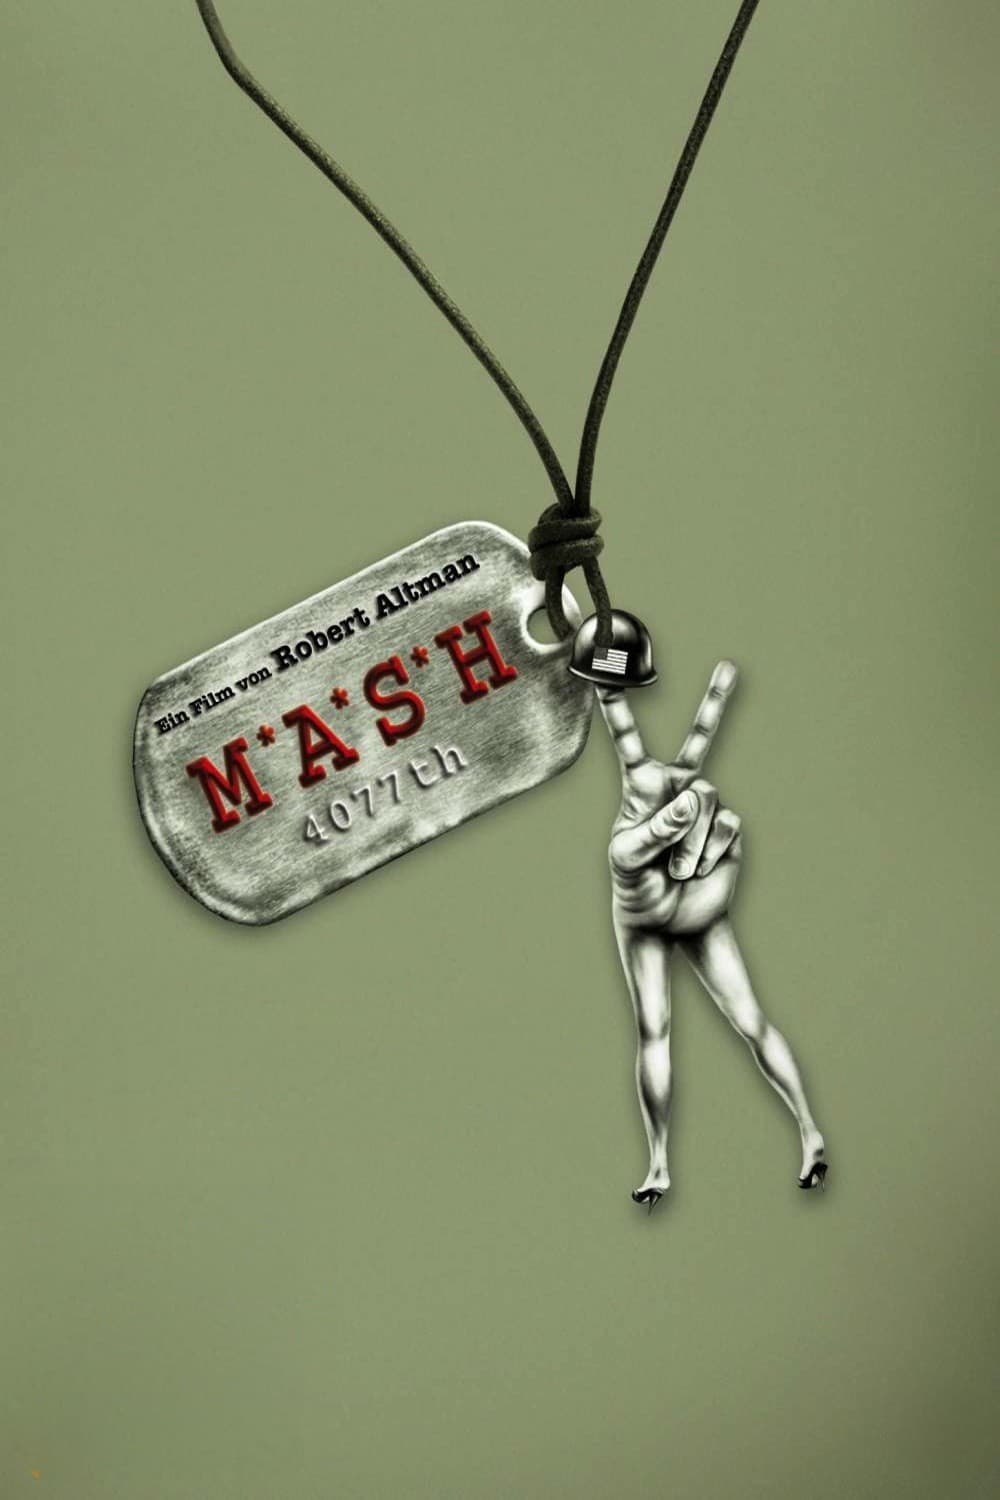 Plakat von "M.A.S.H."